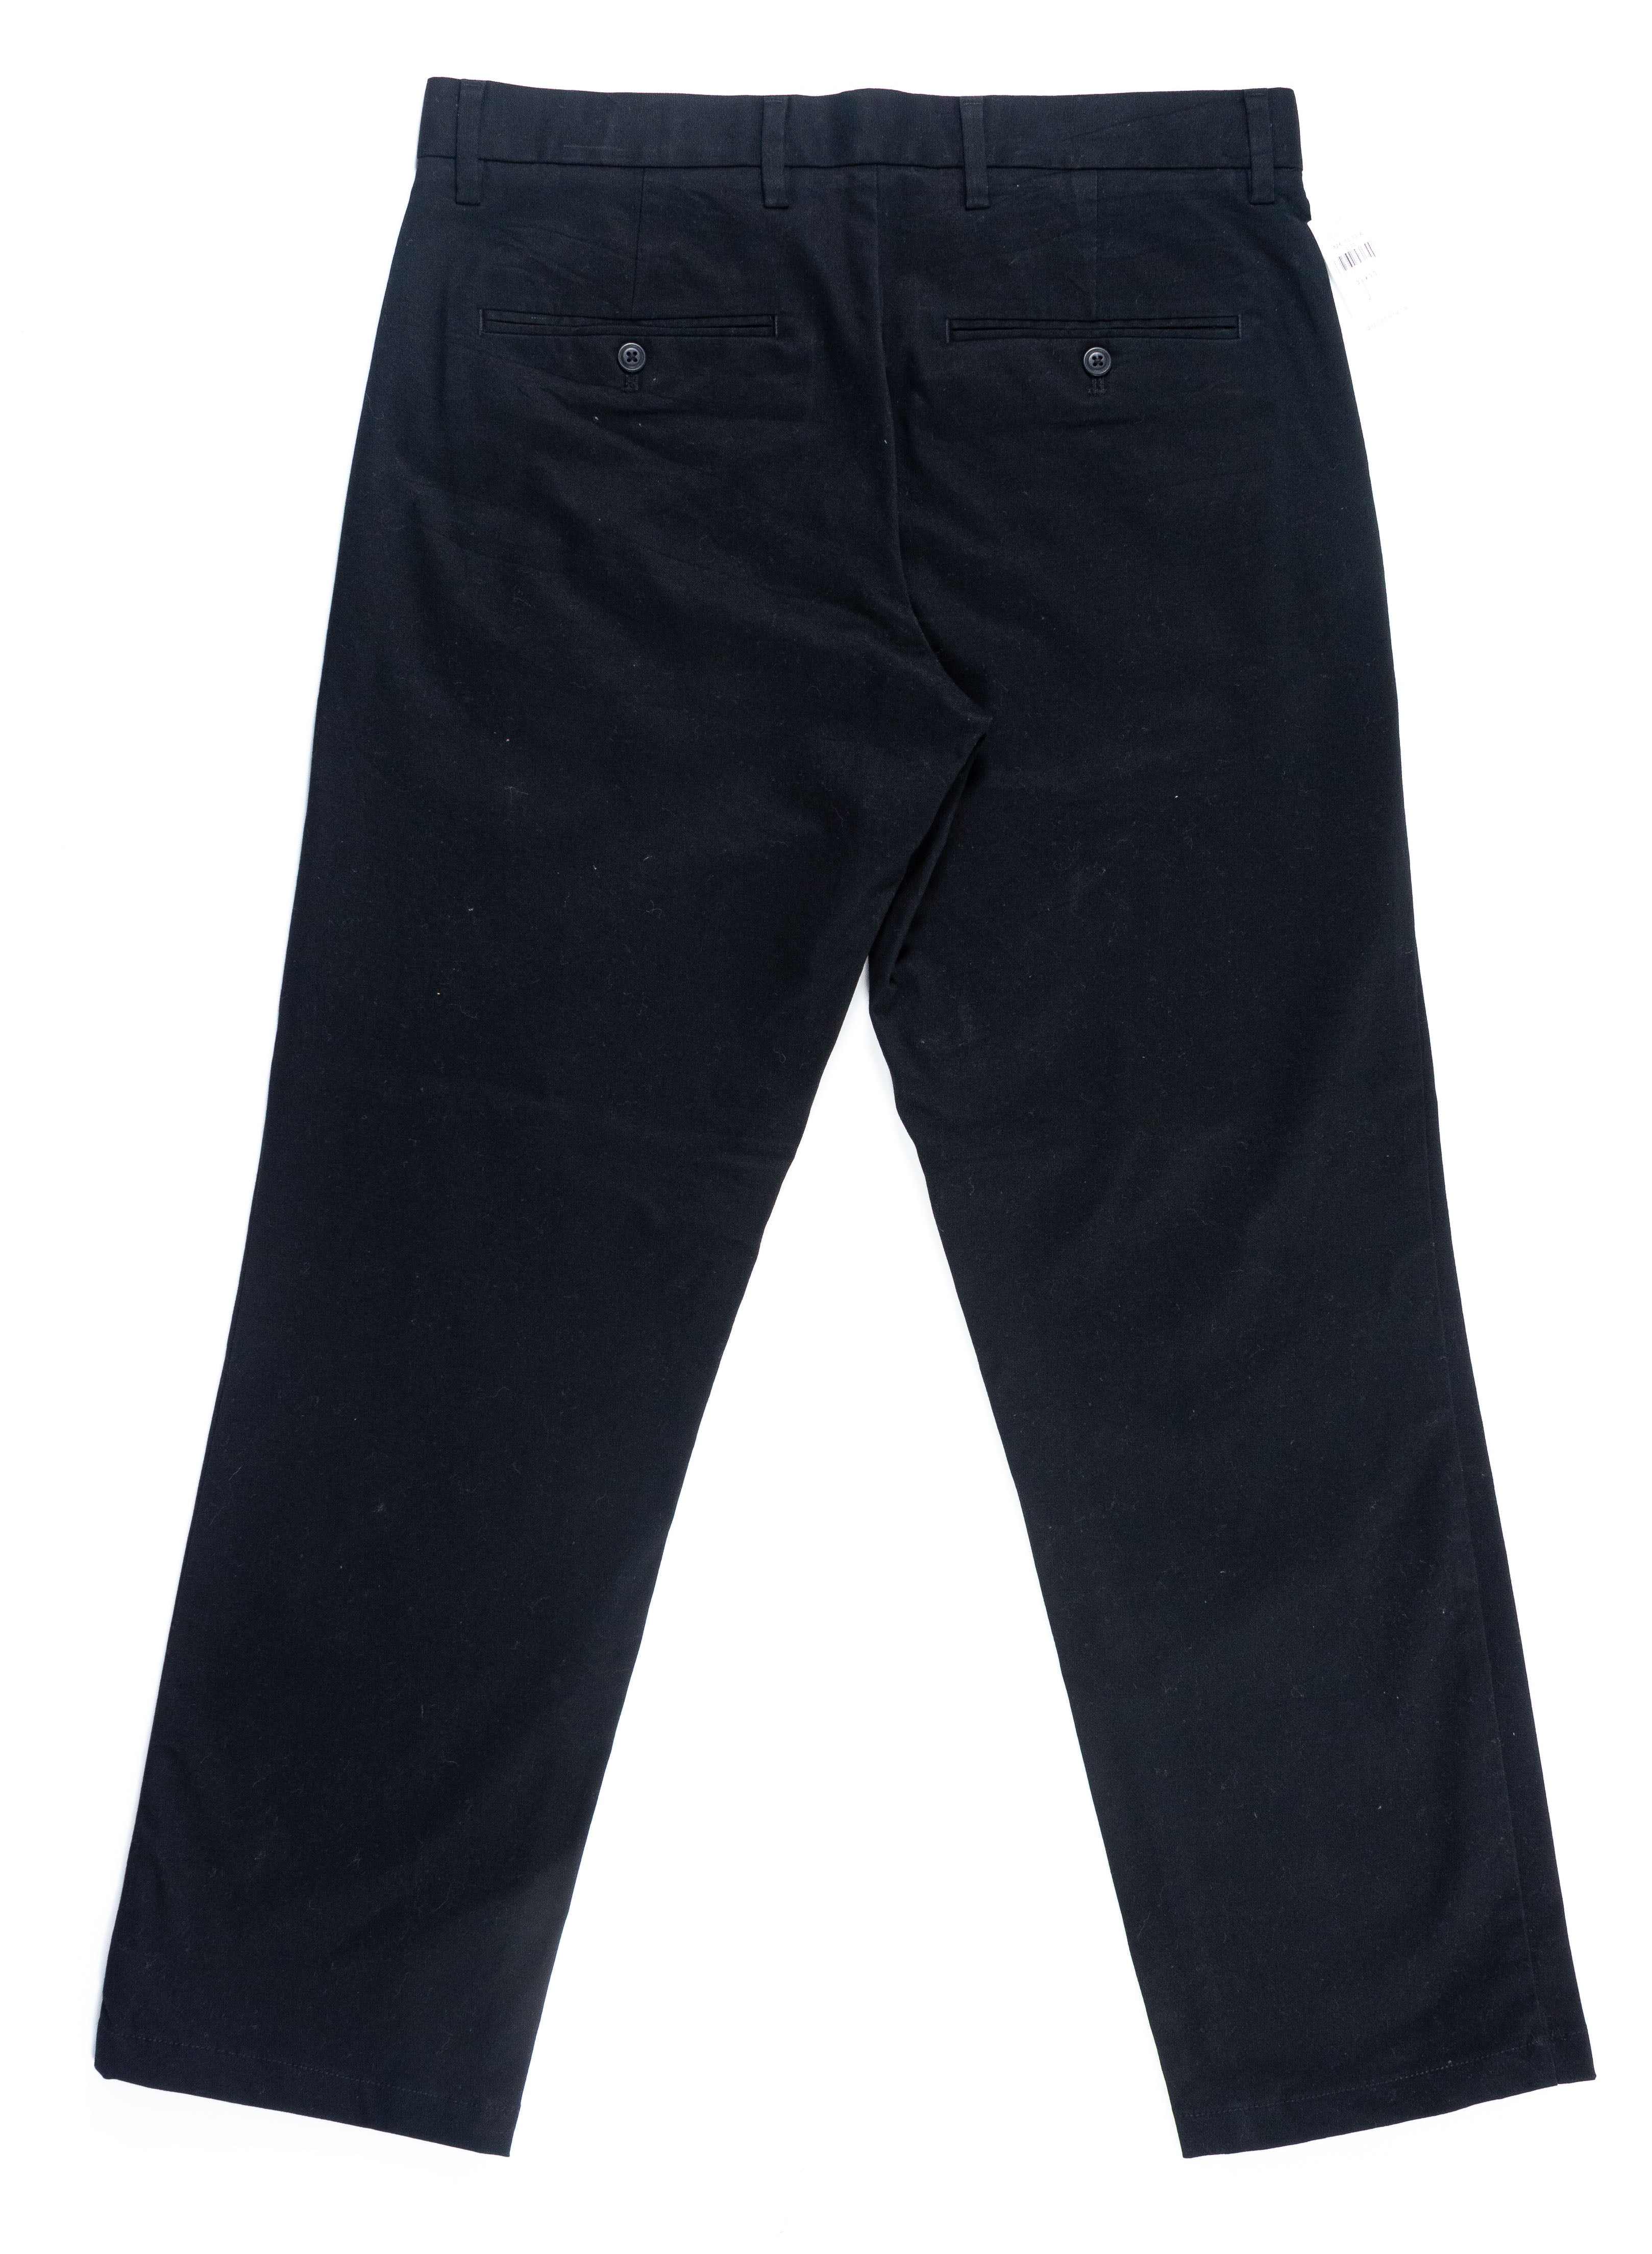 Pantalon de vestir hombre marca Gap - (Talla 31 x 30)